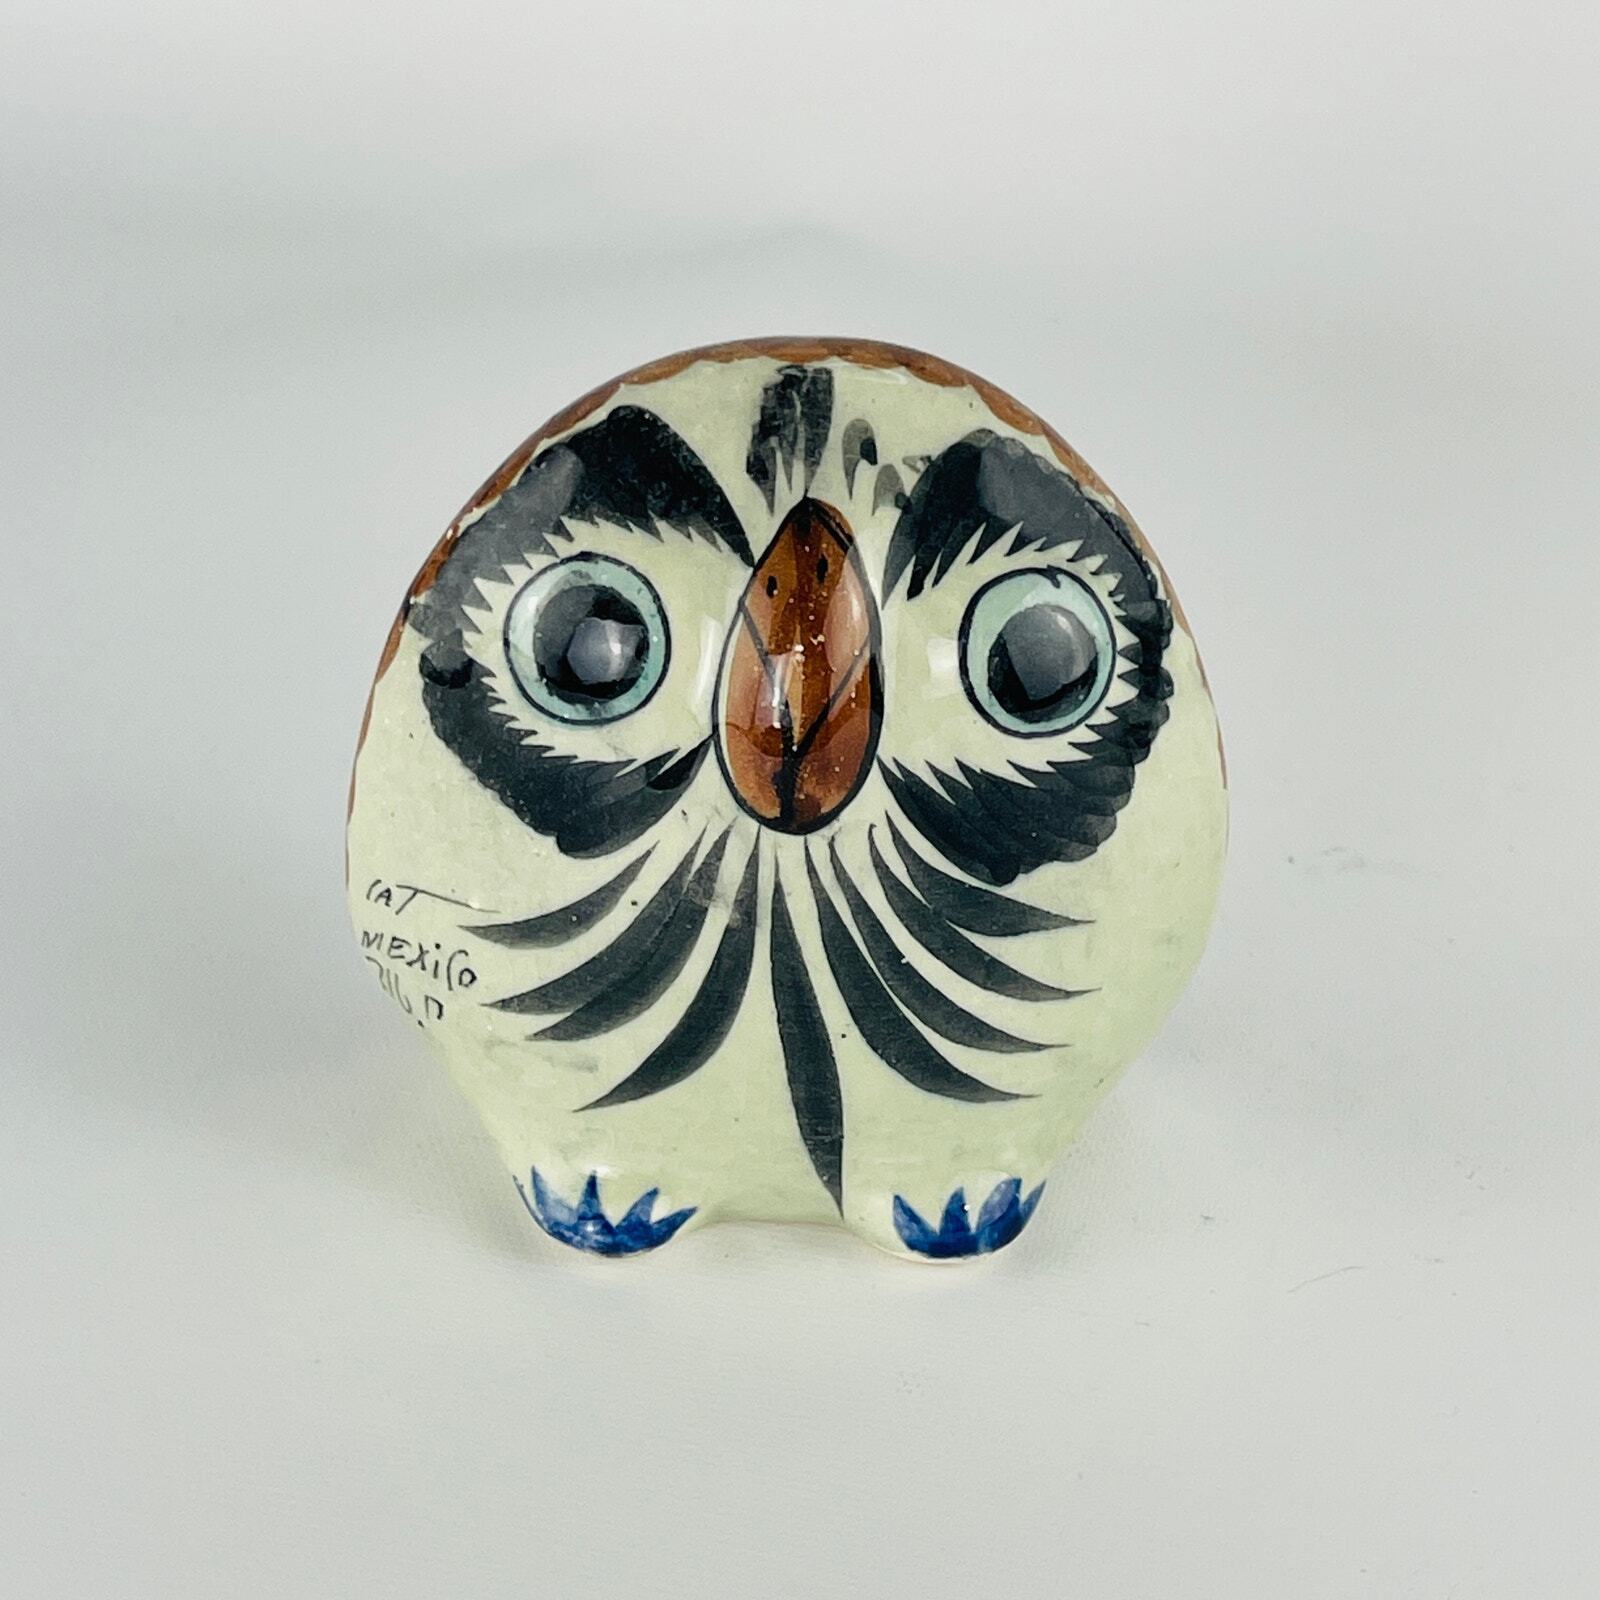  Tonala Mexico Vintage Ceramic Owl 3 5/8 x 3 3/8 x 2 1/8